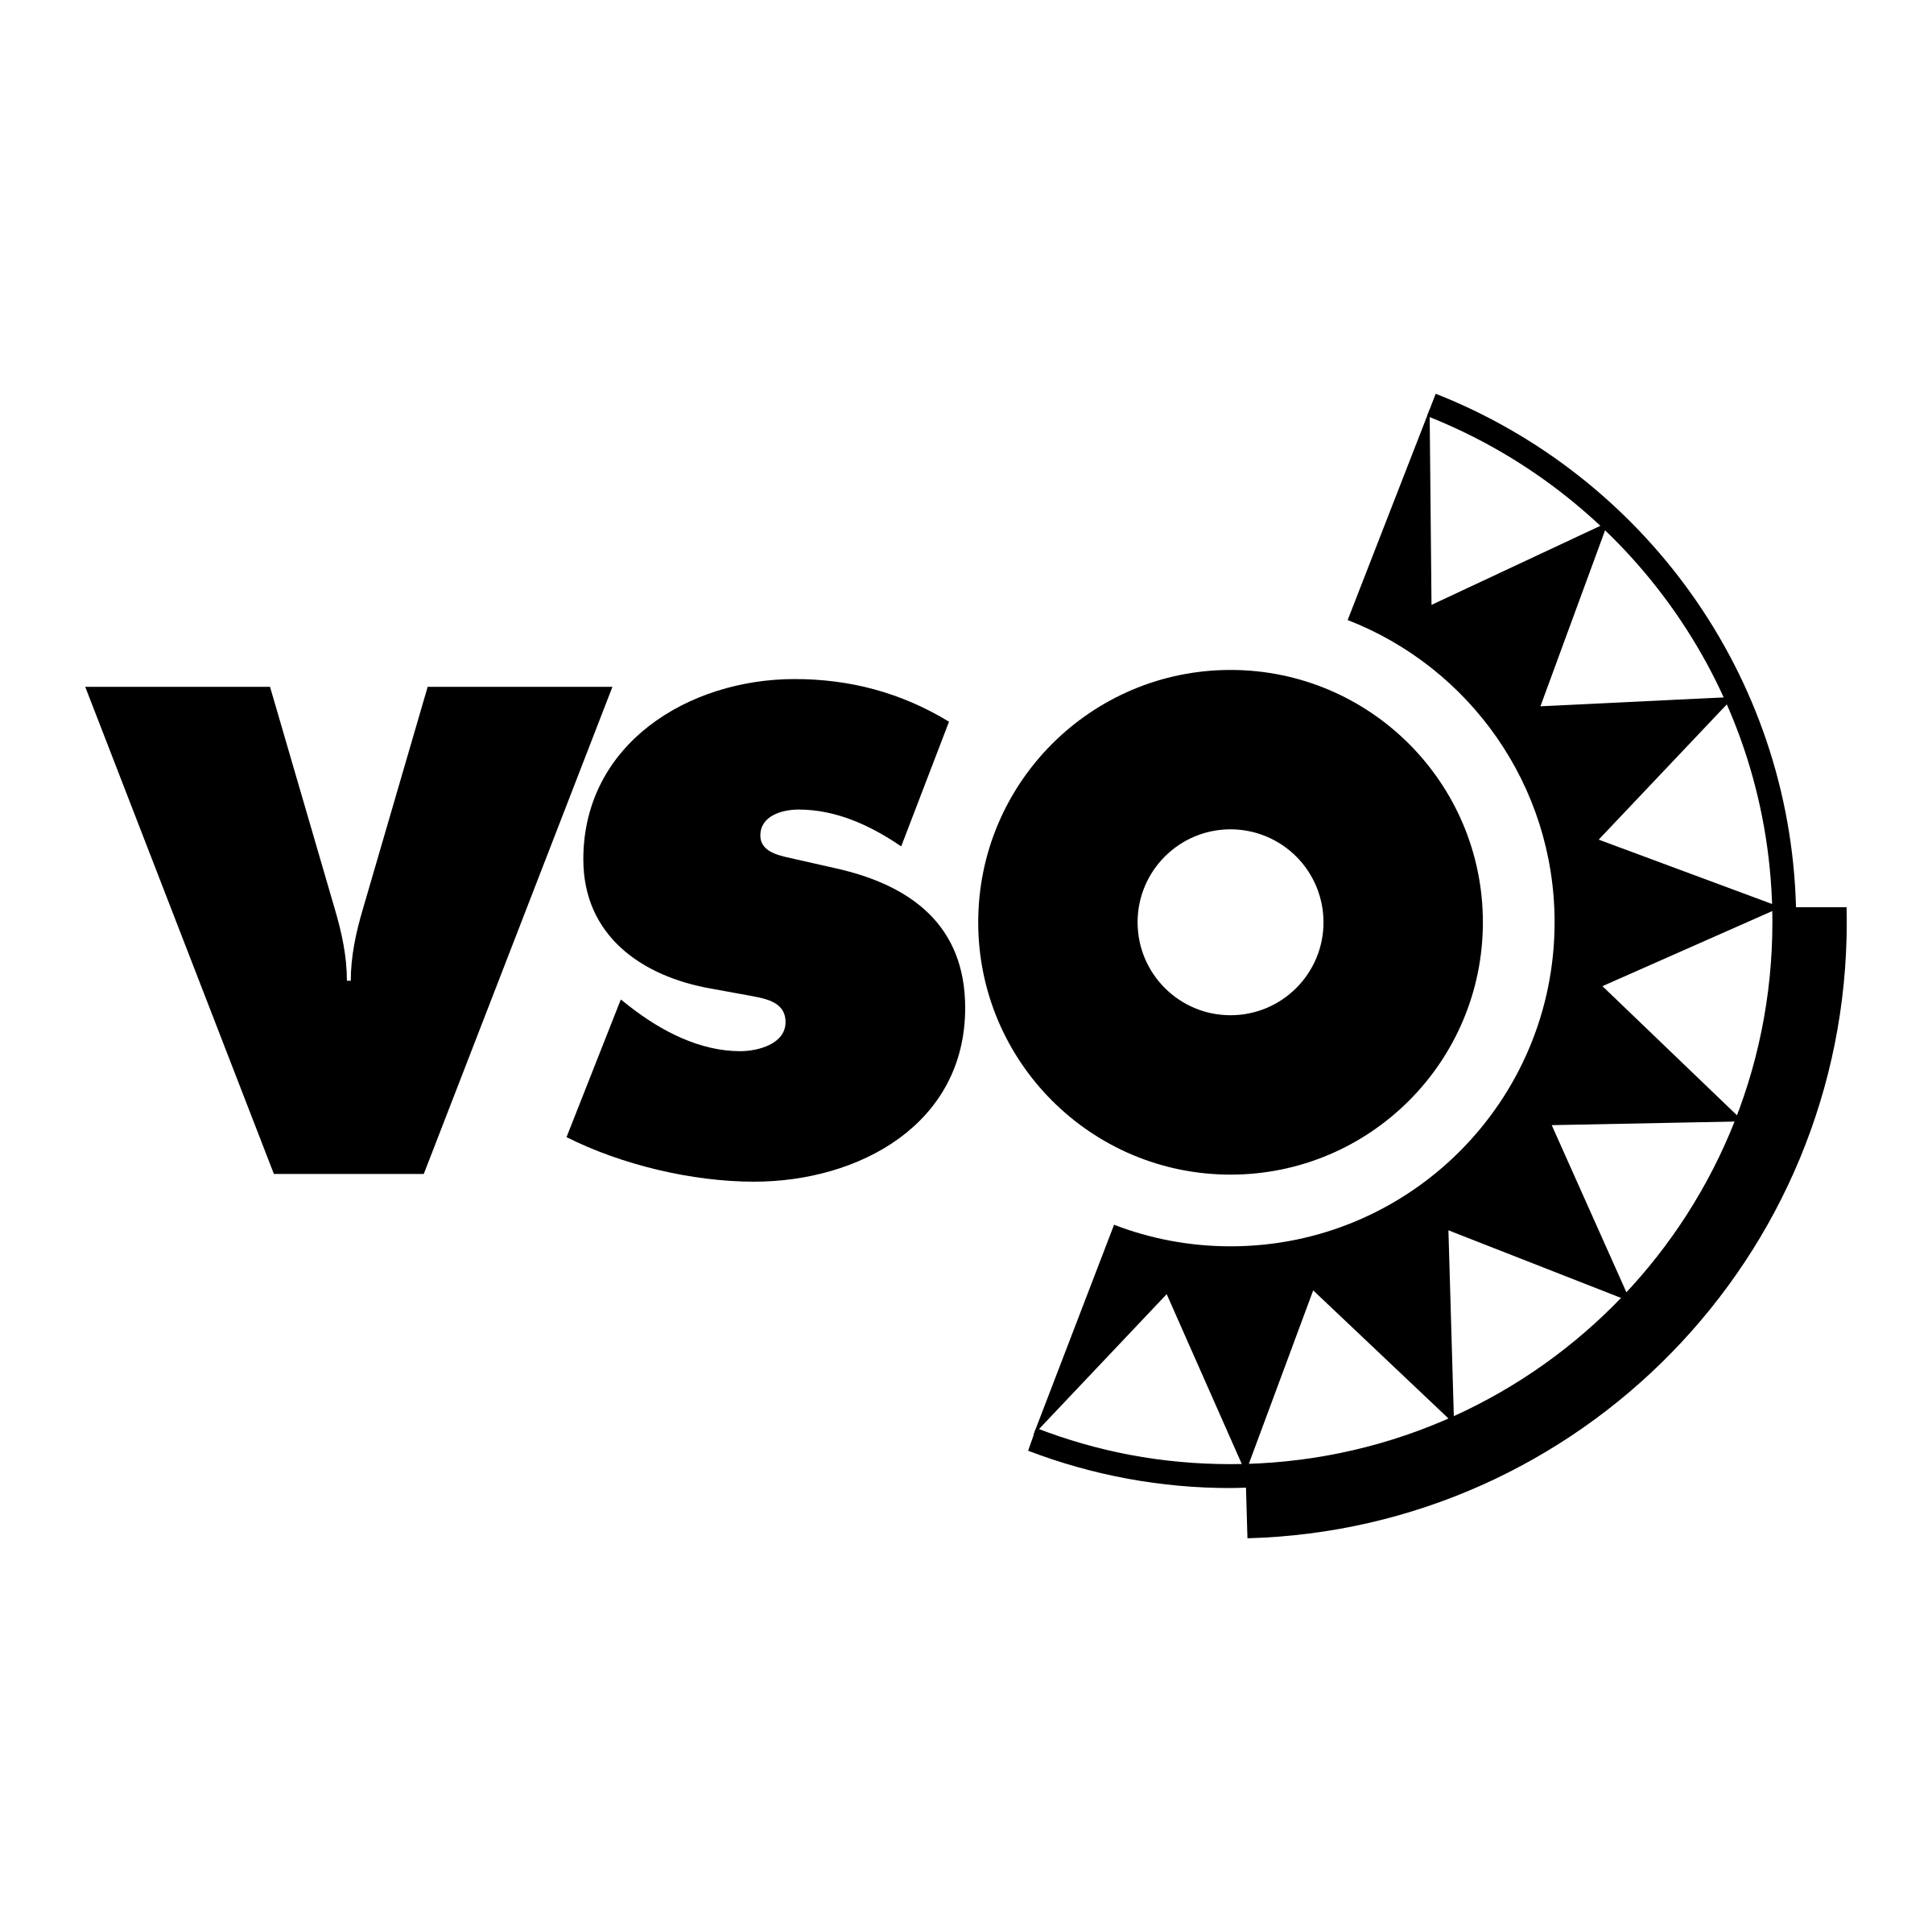 VSO Logo - VSO Logo PNG Transparent & SVG Vector